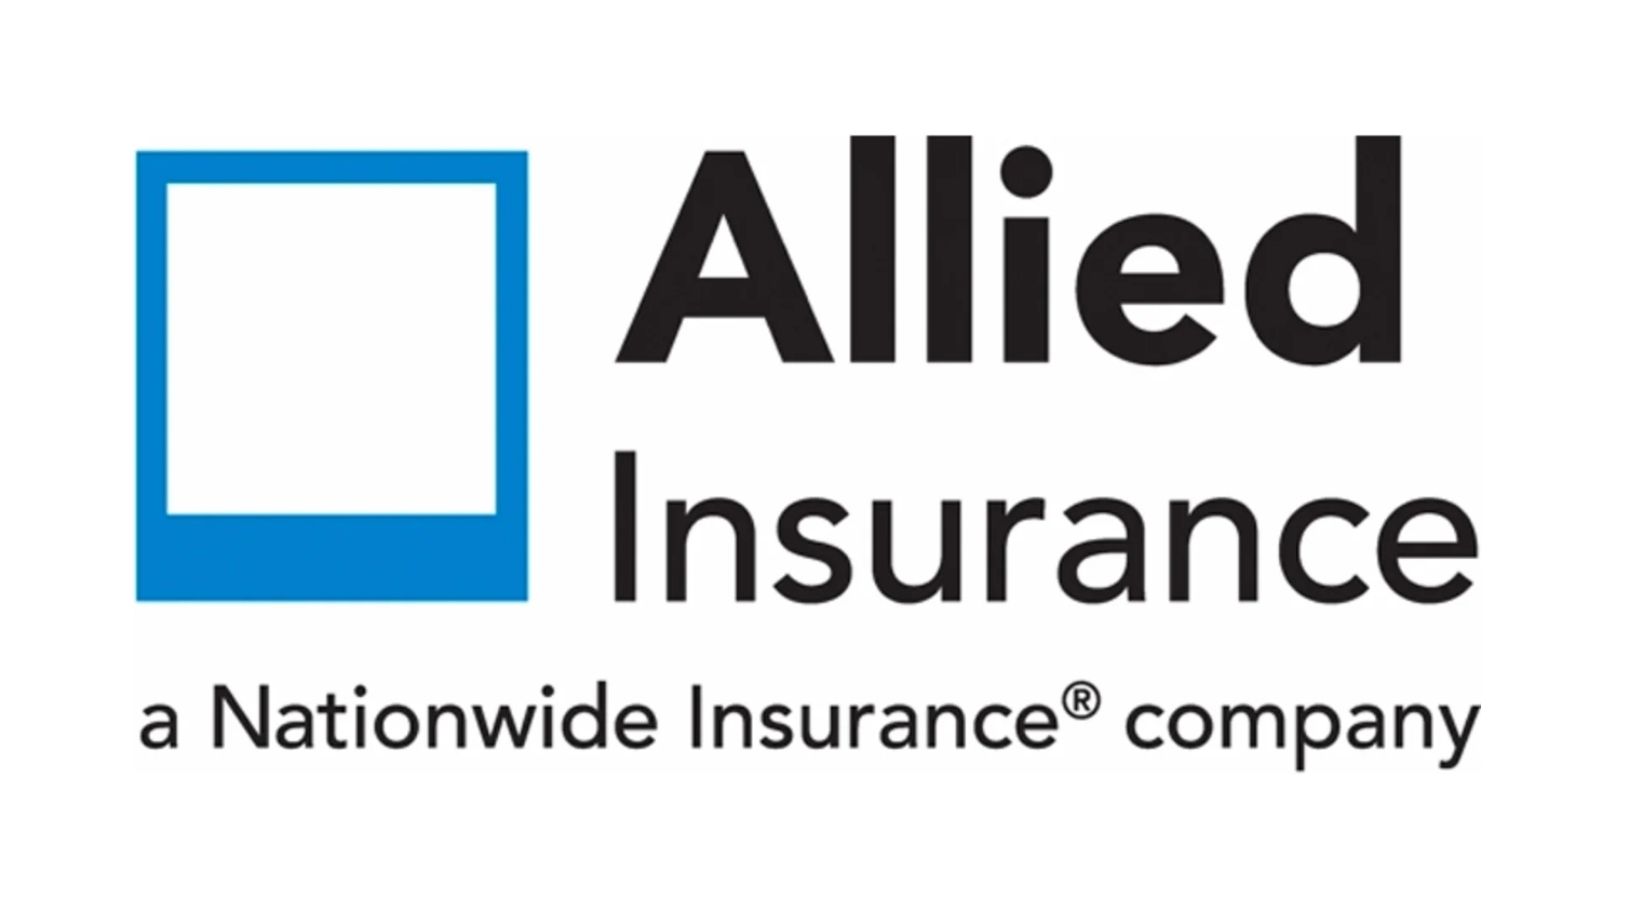 Allied insurance logo